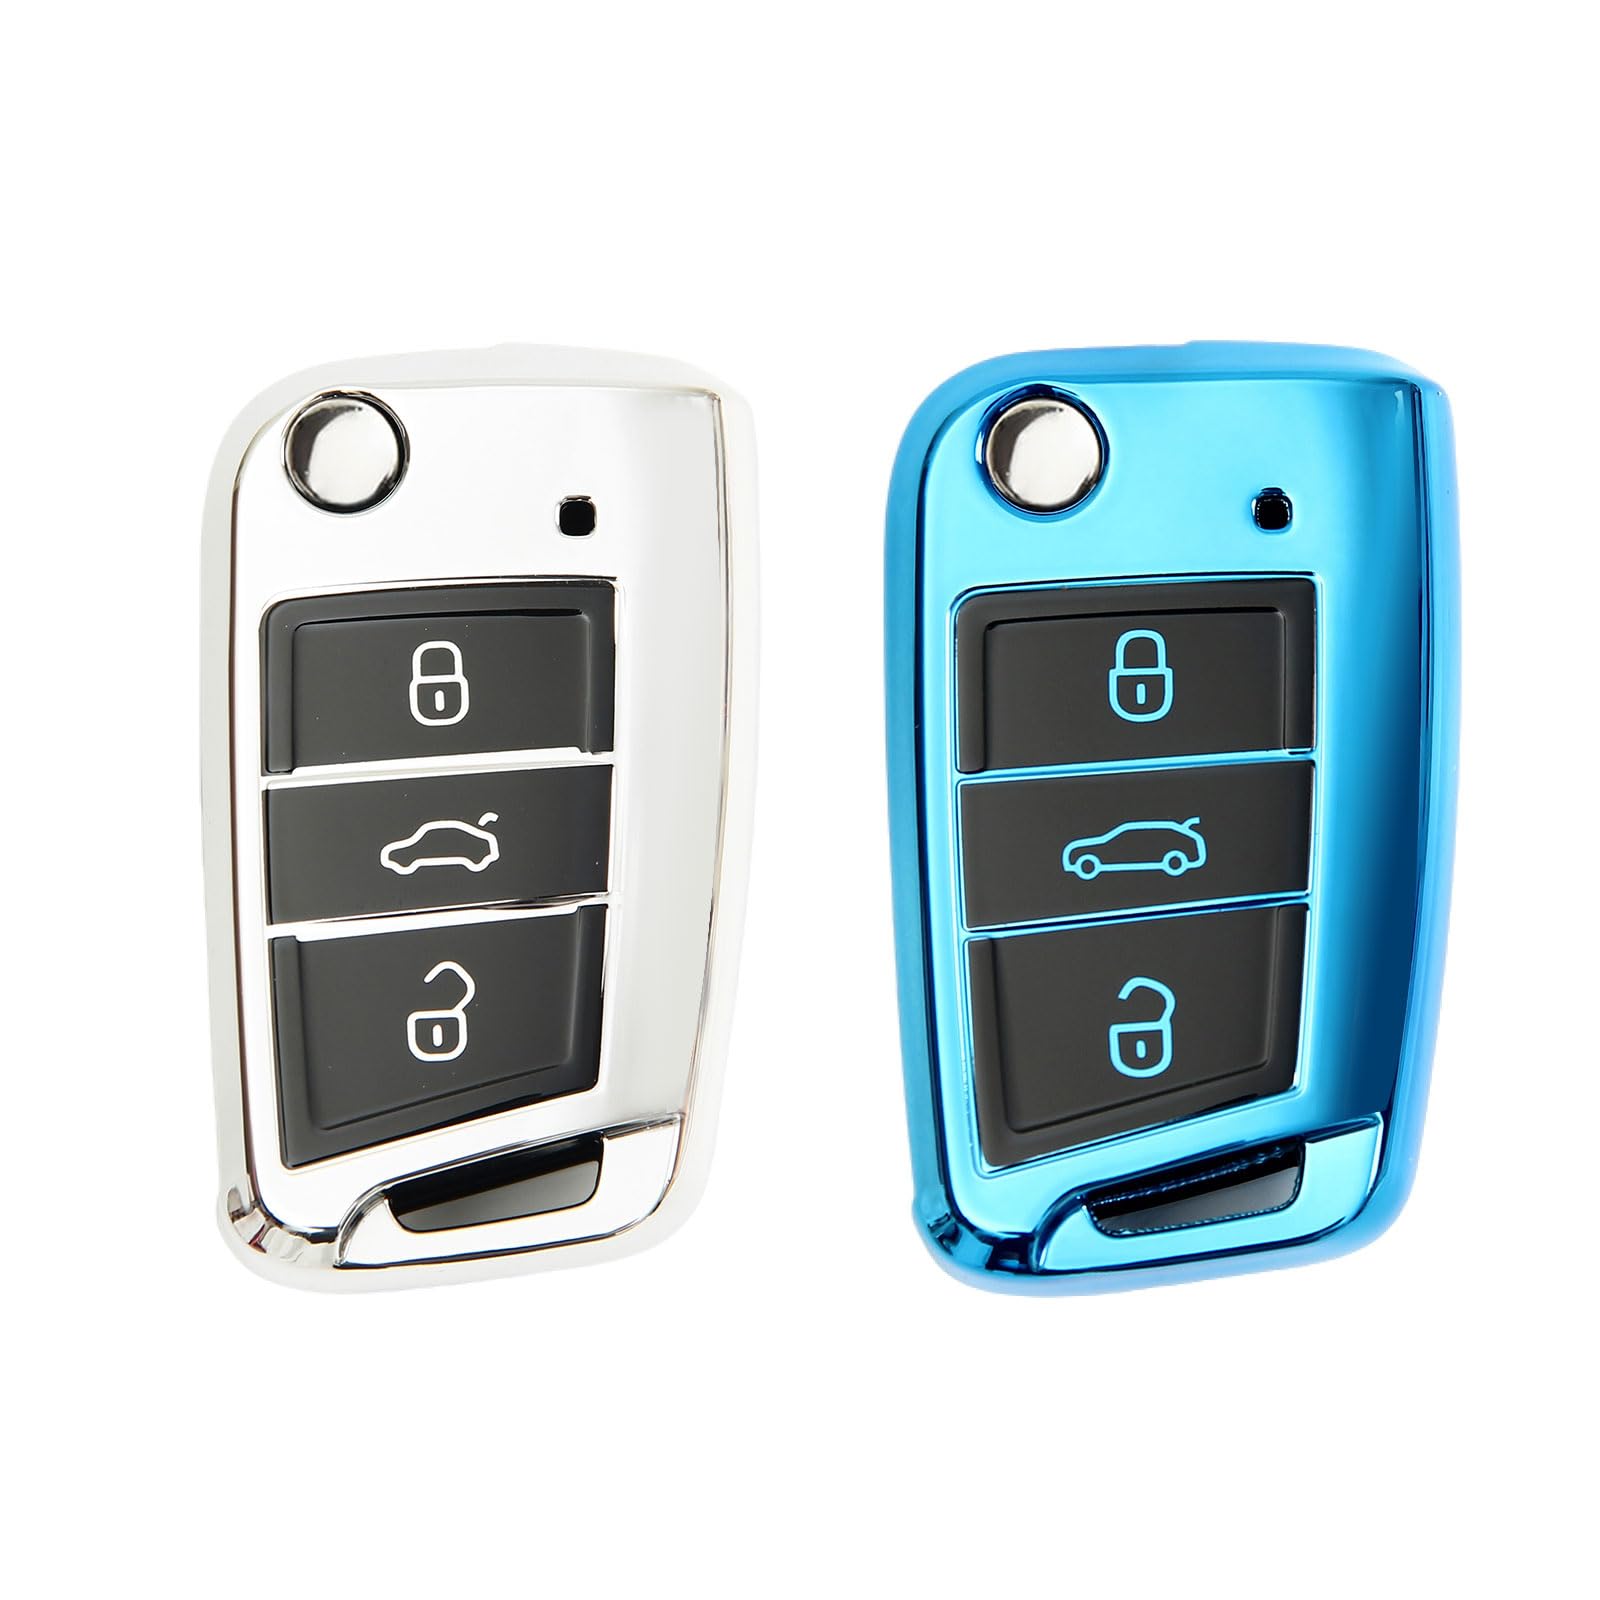 2 Stück Autoschlüssel Hülle, Schlüsselbox ,Autoschlüssel Schutzhülle kompatibel mit VW Golf 7、Polo、Tiguan、Skoda 3-Tasten Schlüsselhülle (Silber + Blau) von Mythosurge